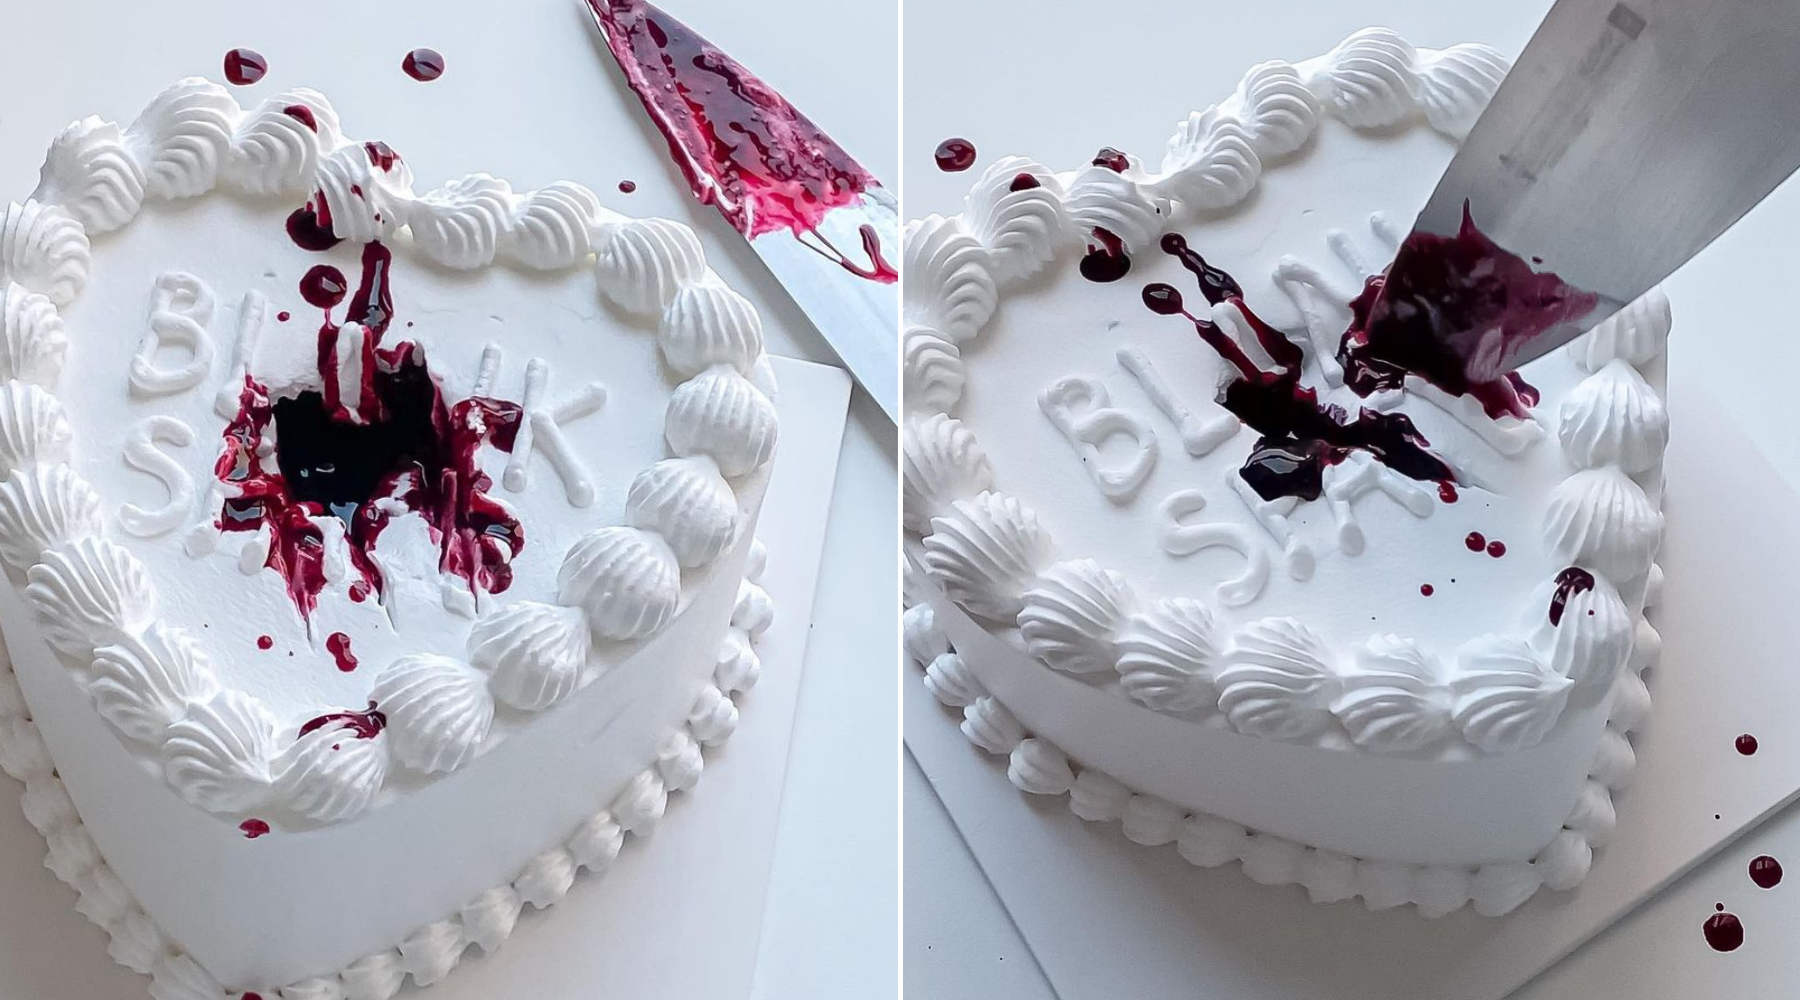 Ako vam ove godine nije do Dana zaljubljenih, imamo idealan recept za antivalentinovsku tortu